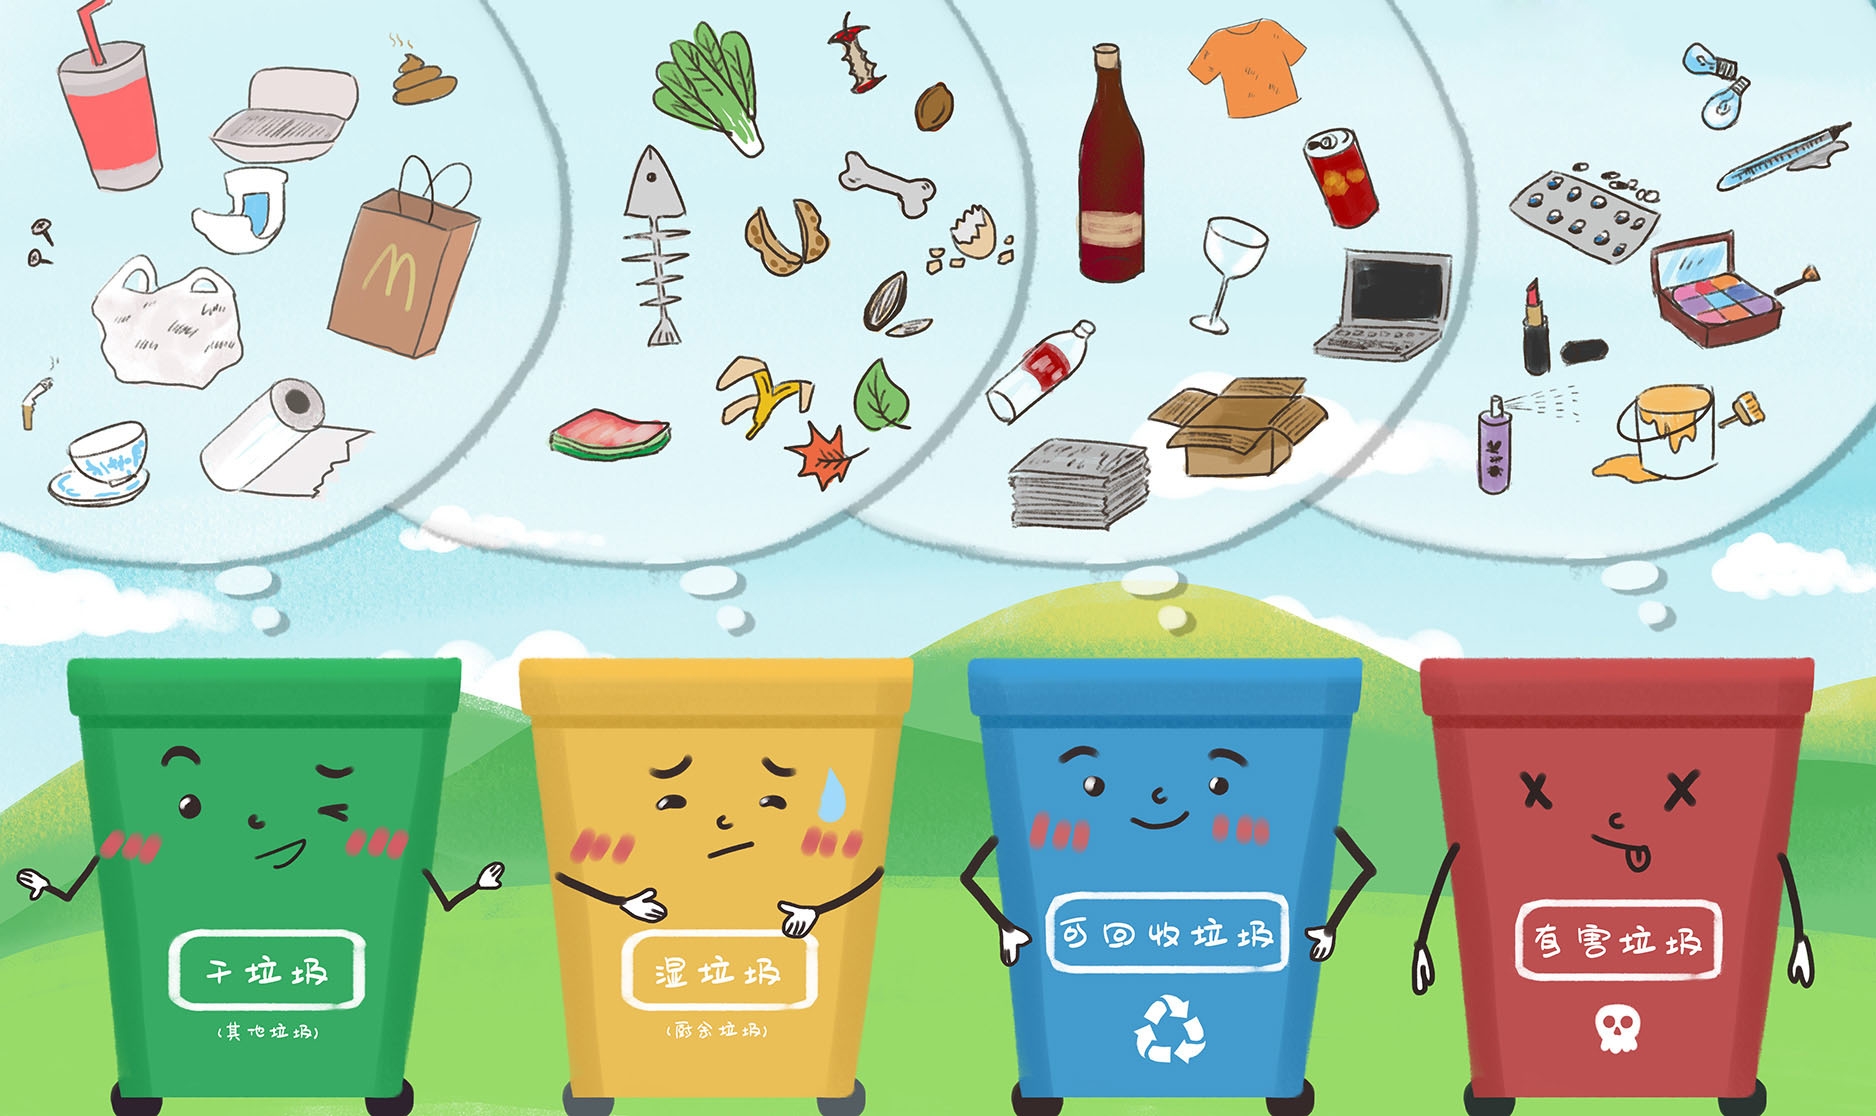 Картинки на тему сортировка мусора для детей